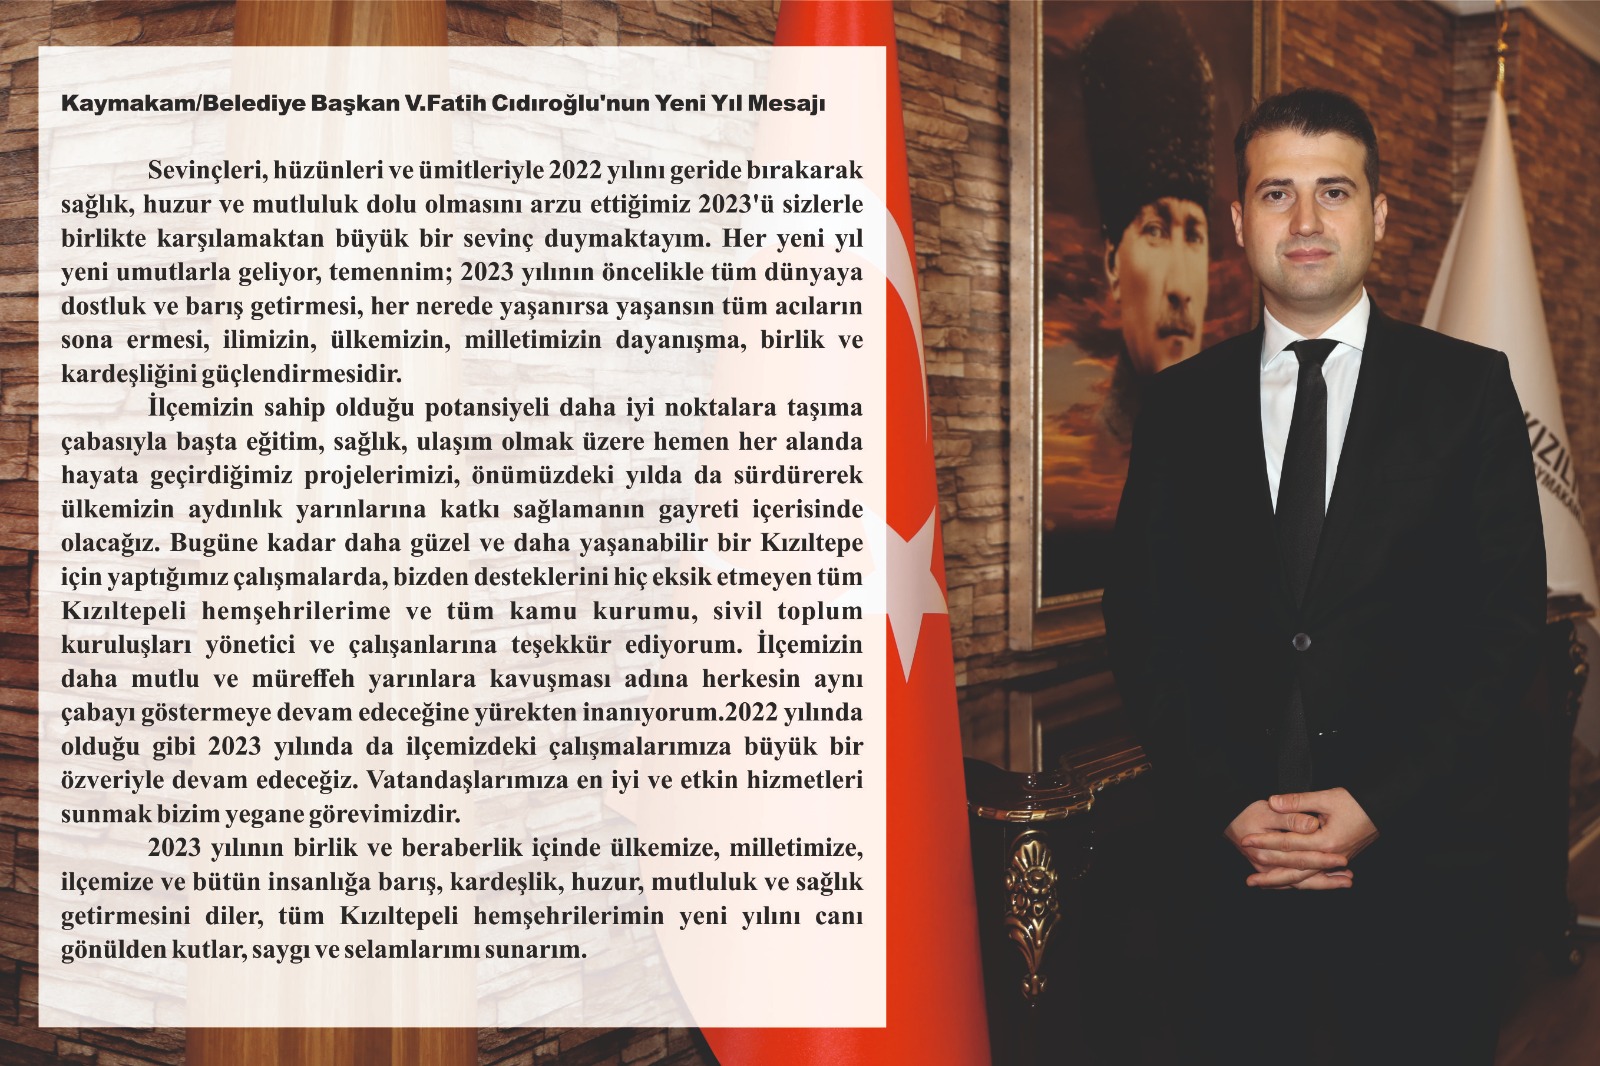 Kızıltepe Kaymakamı ve Belediye Başkan V. Fatih CIDIROĞLU’nun yeni yıl mesajı